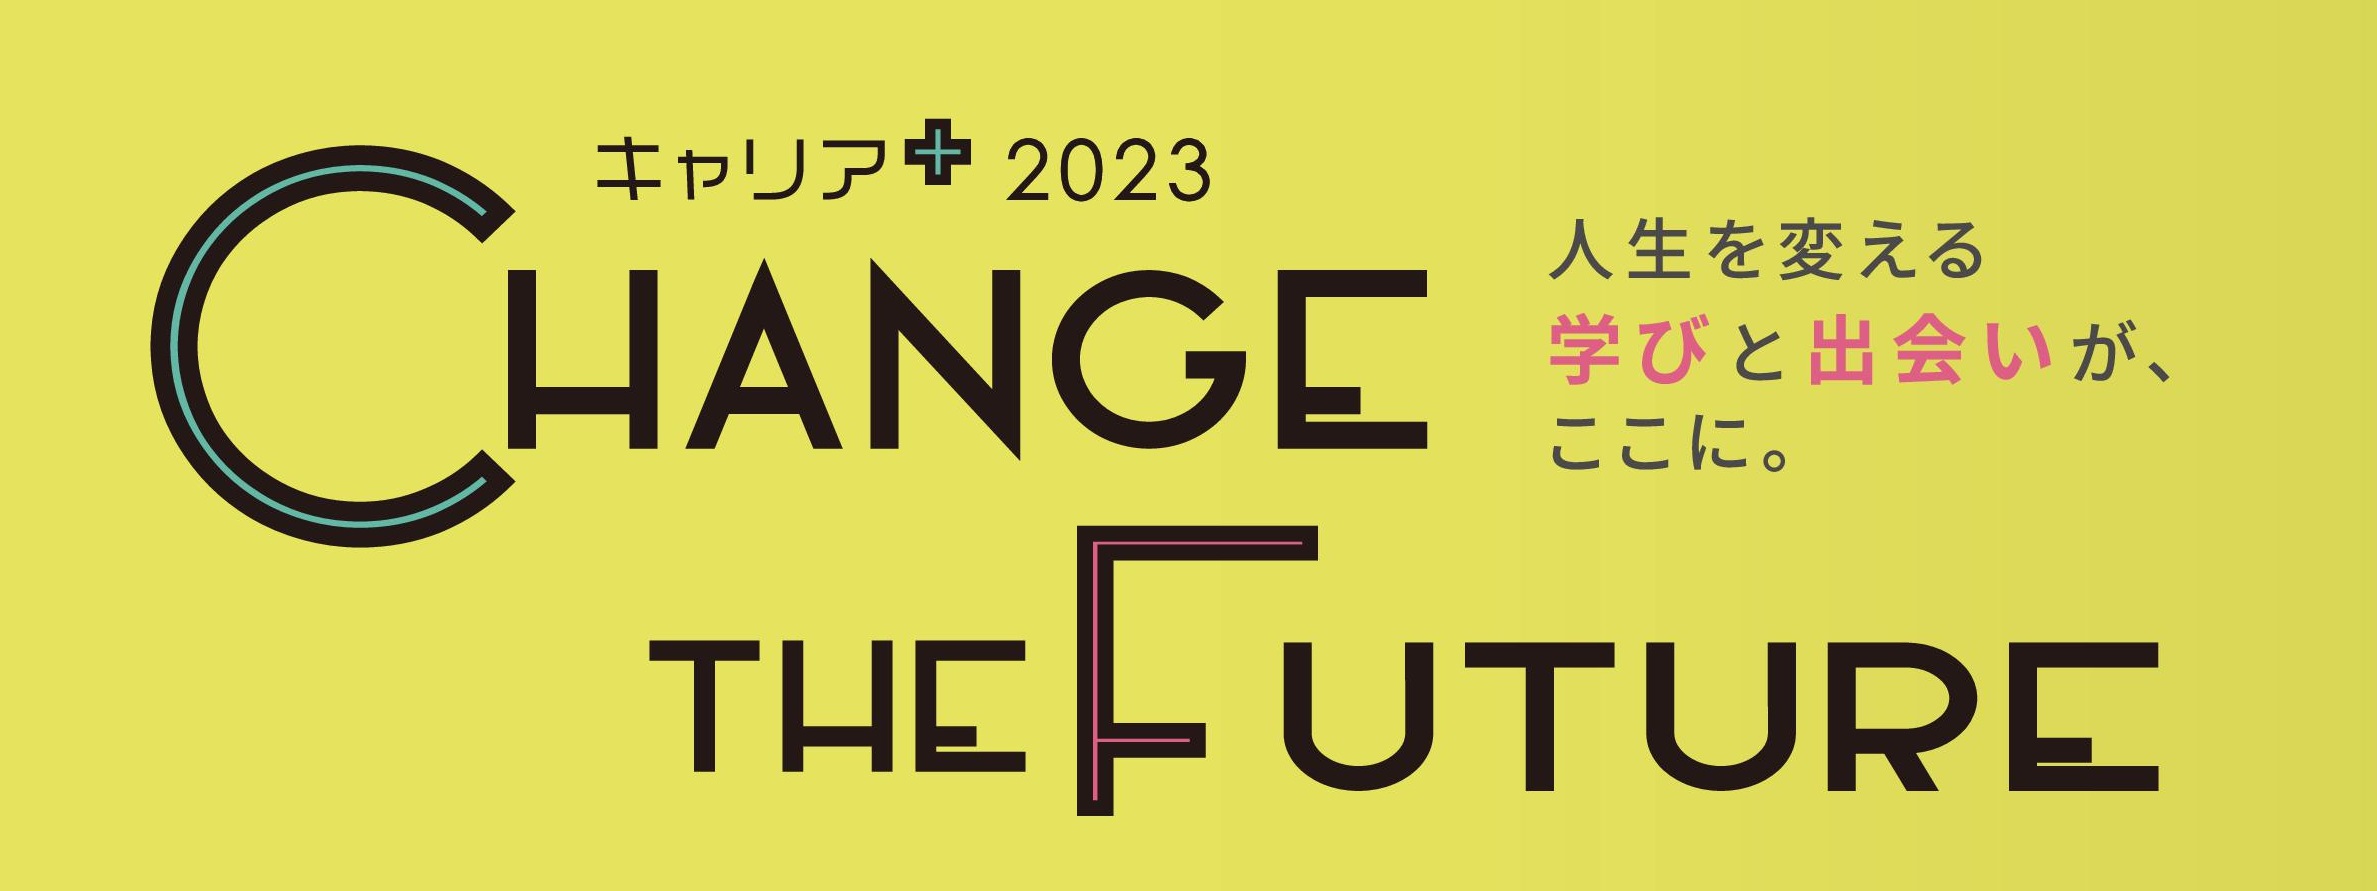 水戸生涯学習センター_CHANGE THE FUTURE